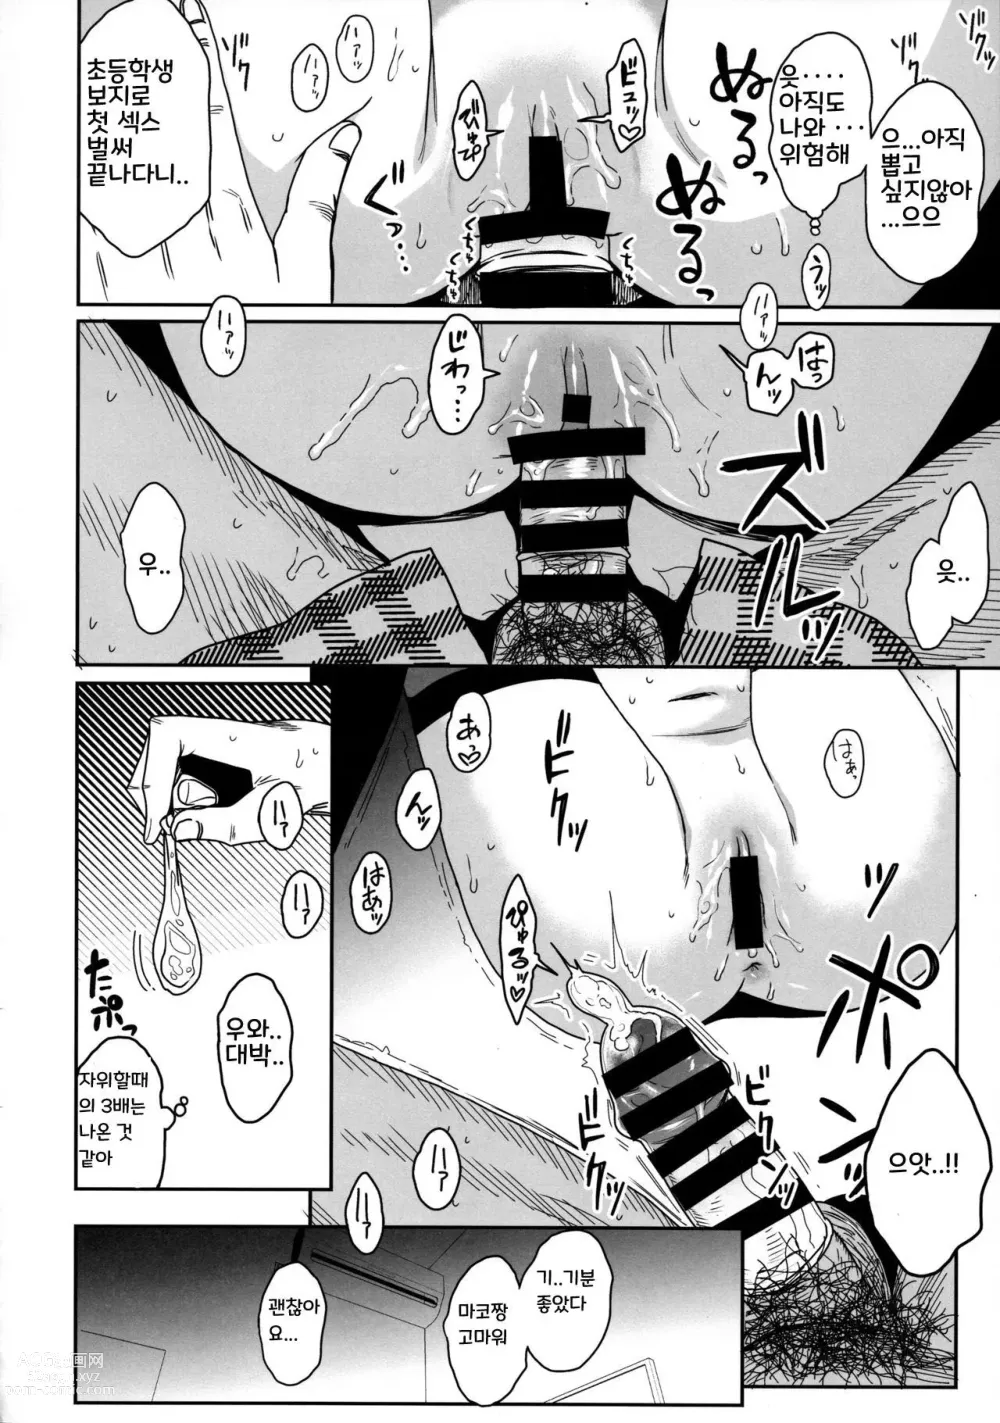 Page 30 of doujinshi Tonari no Mako-chan Season 2 Vol. 2